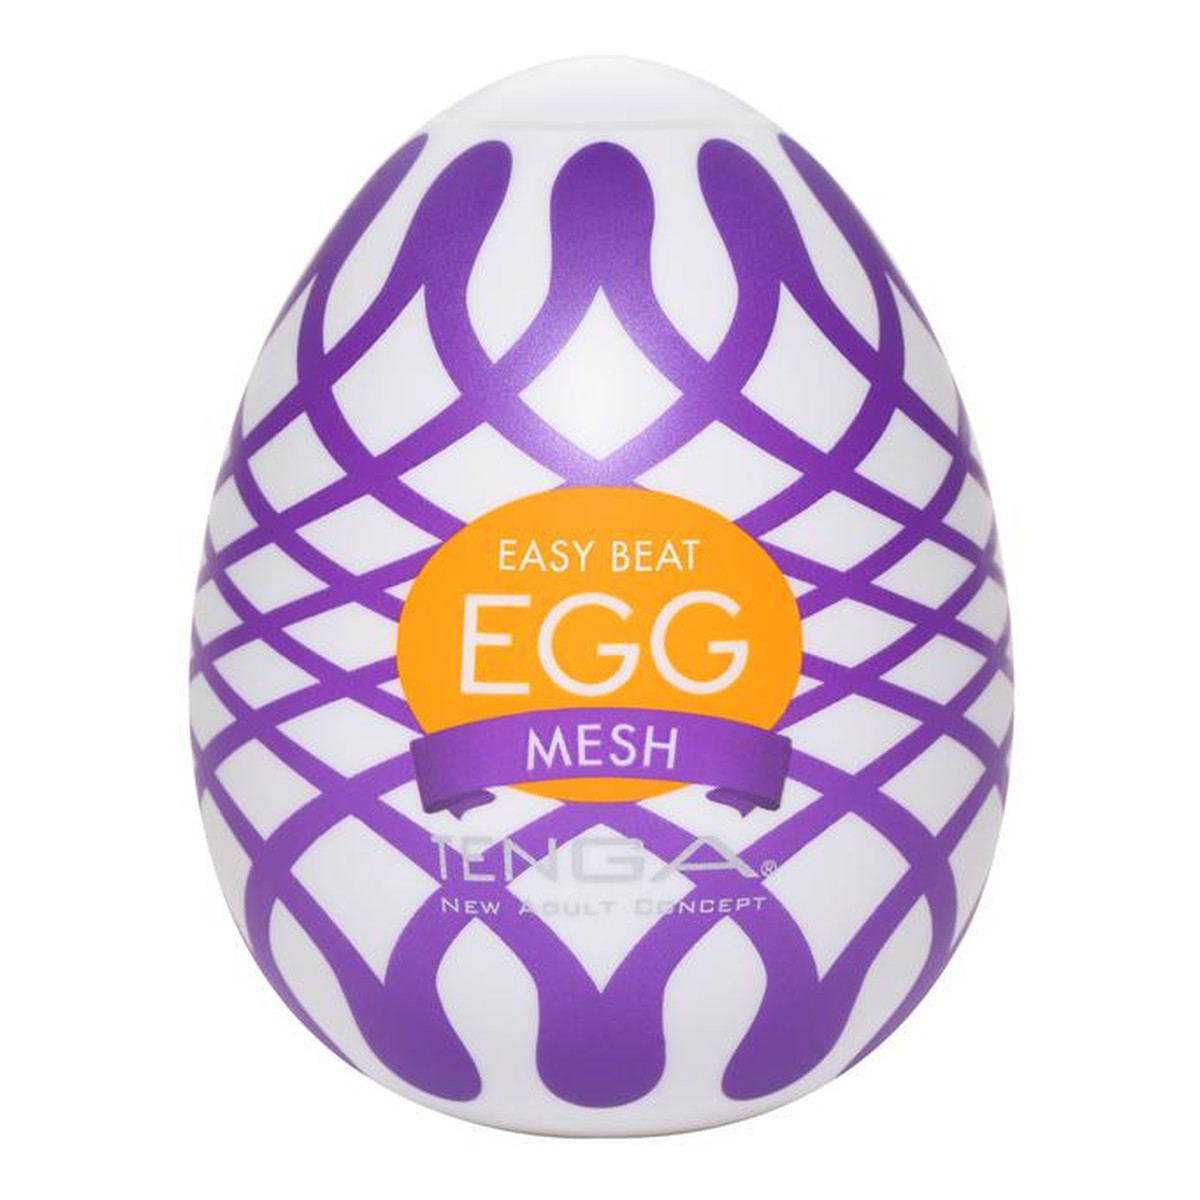 Tenga Easy beat egg mesh jednorazowy masturbator w kształcie jajka